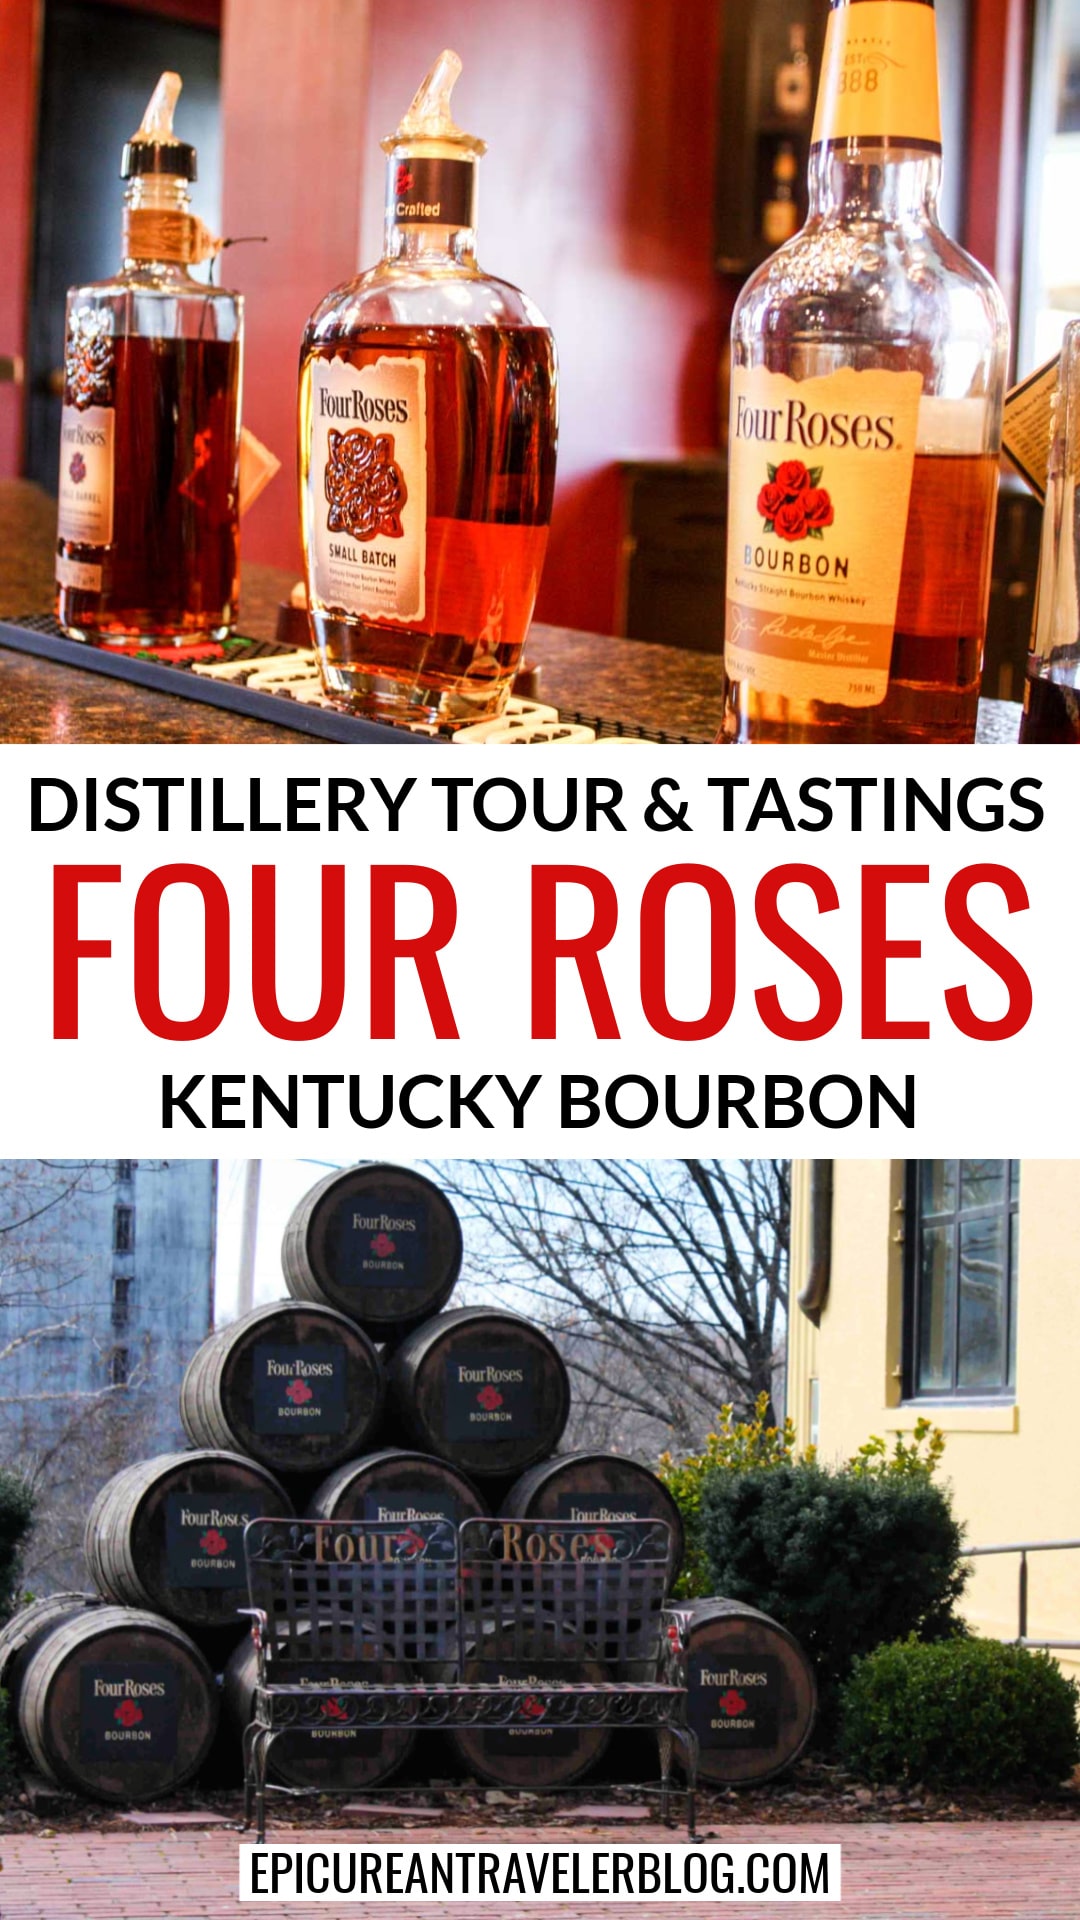 Four Roses Bourbon Distillery tour - The Epicurean Traveler